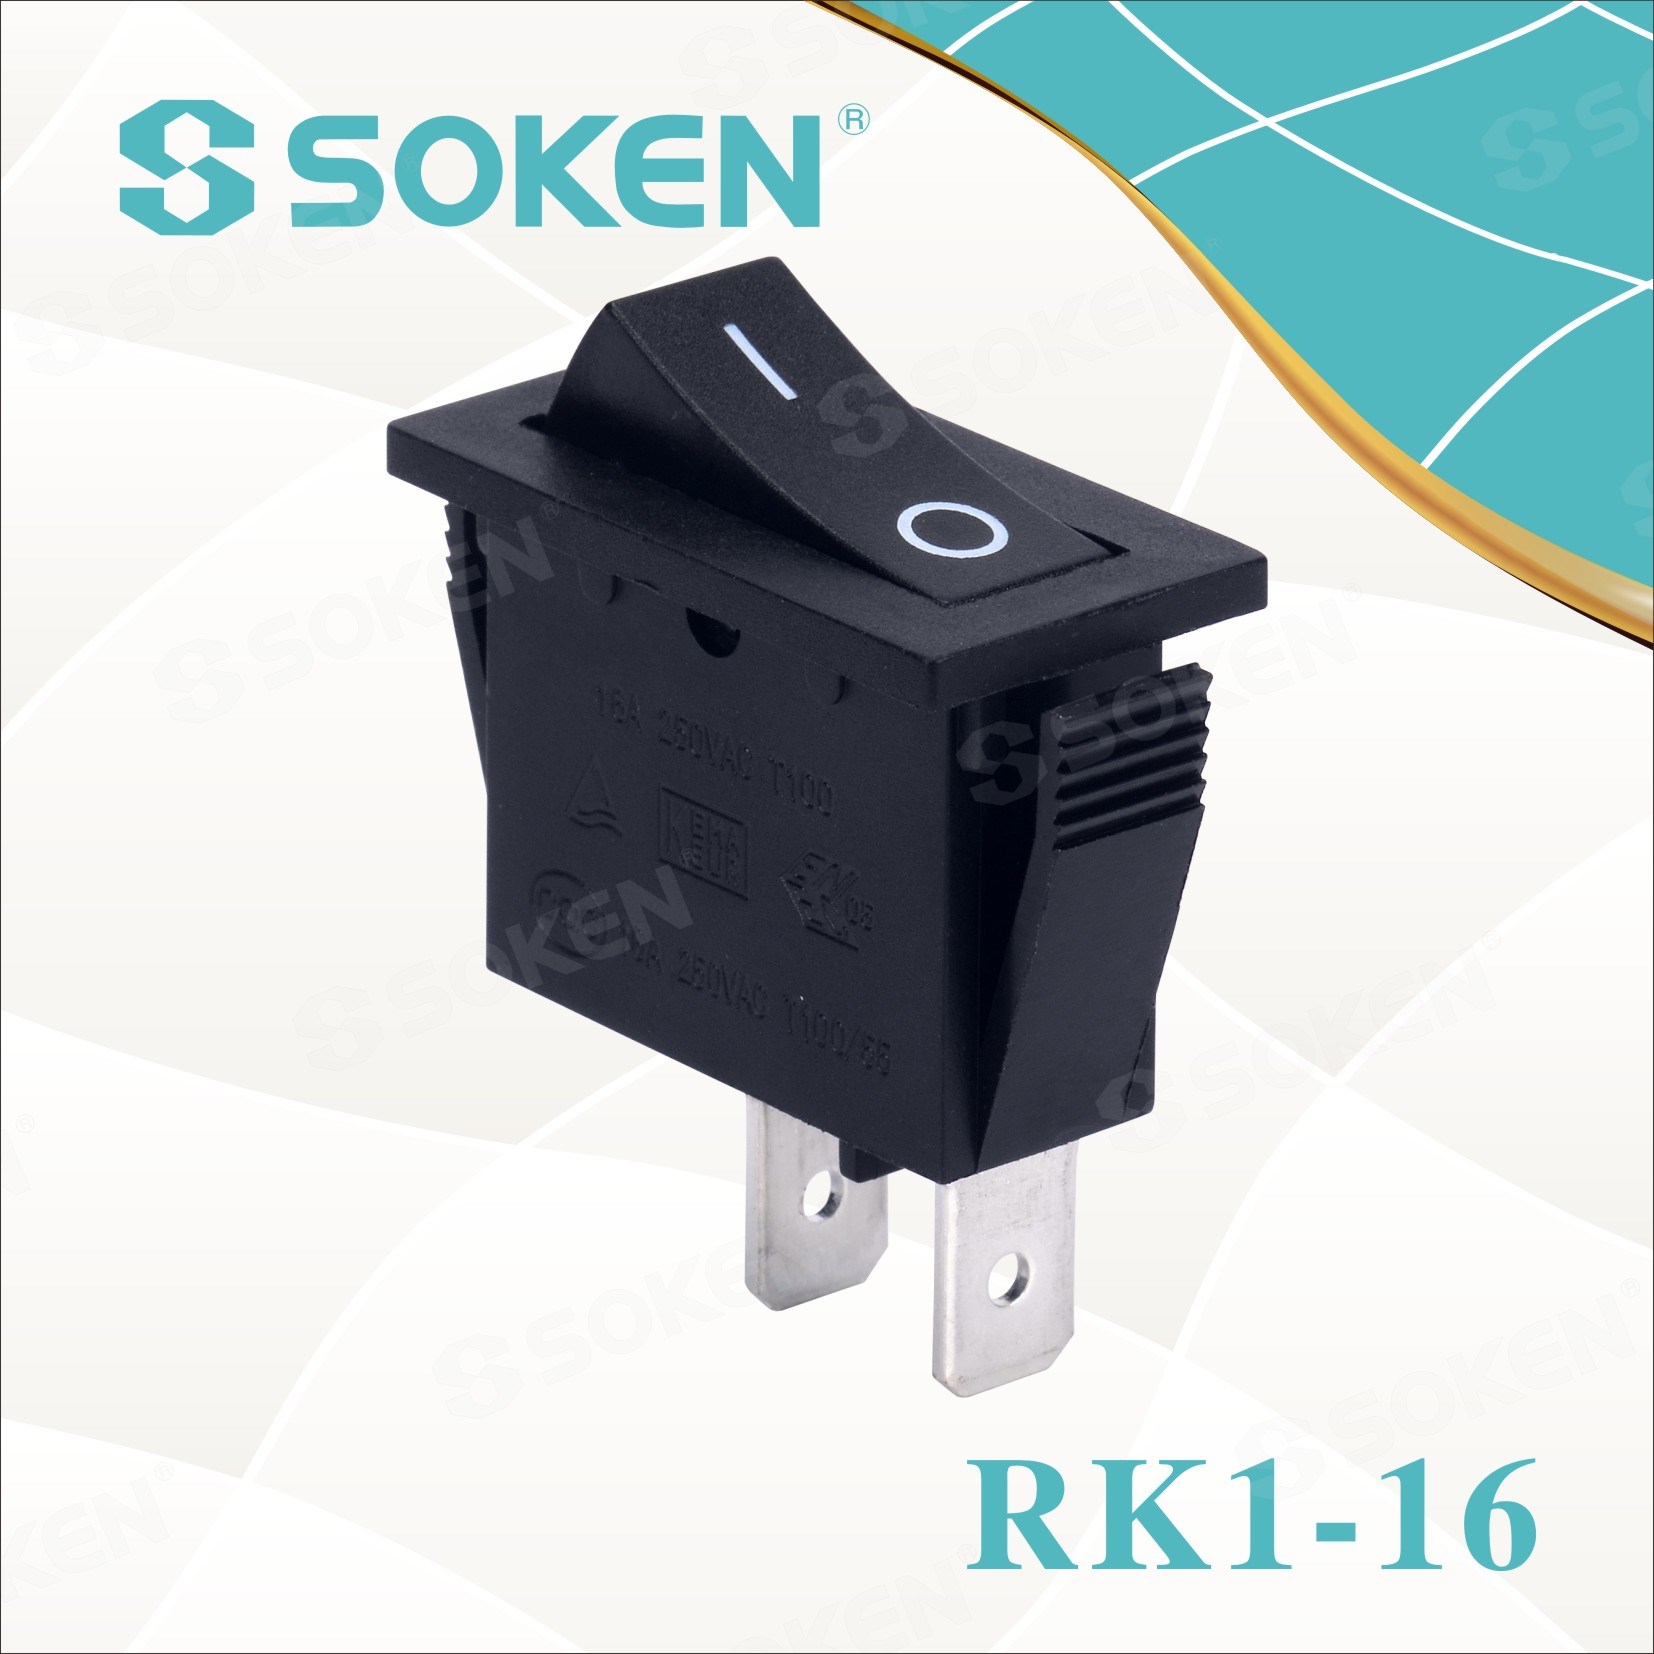 Soken Rk1-16 1X1 B/R on off Rocker Switch